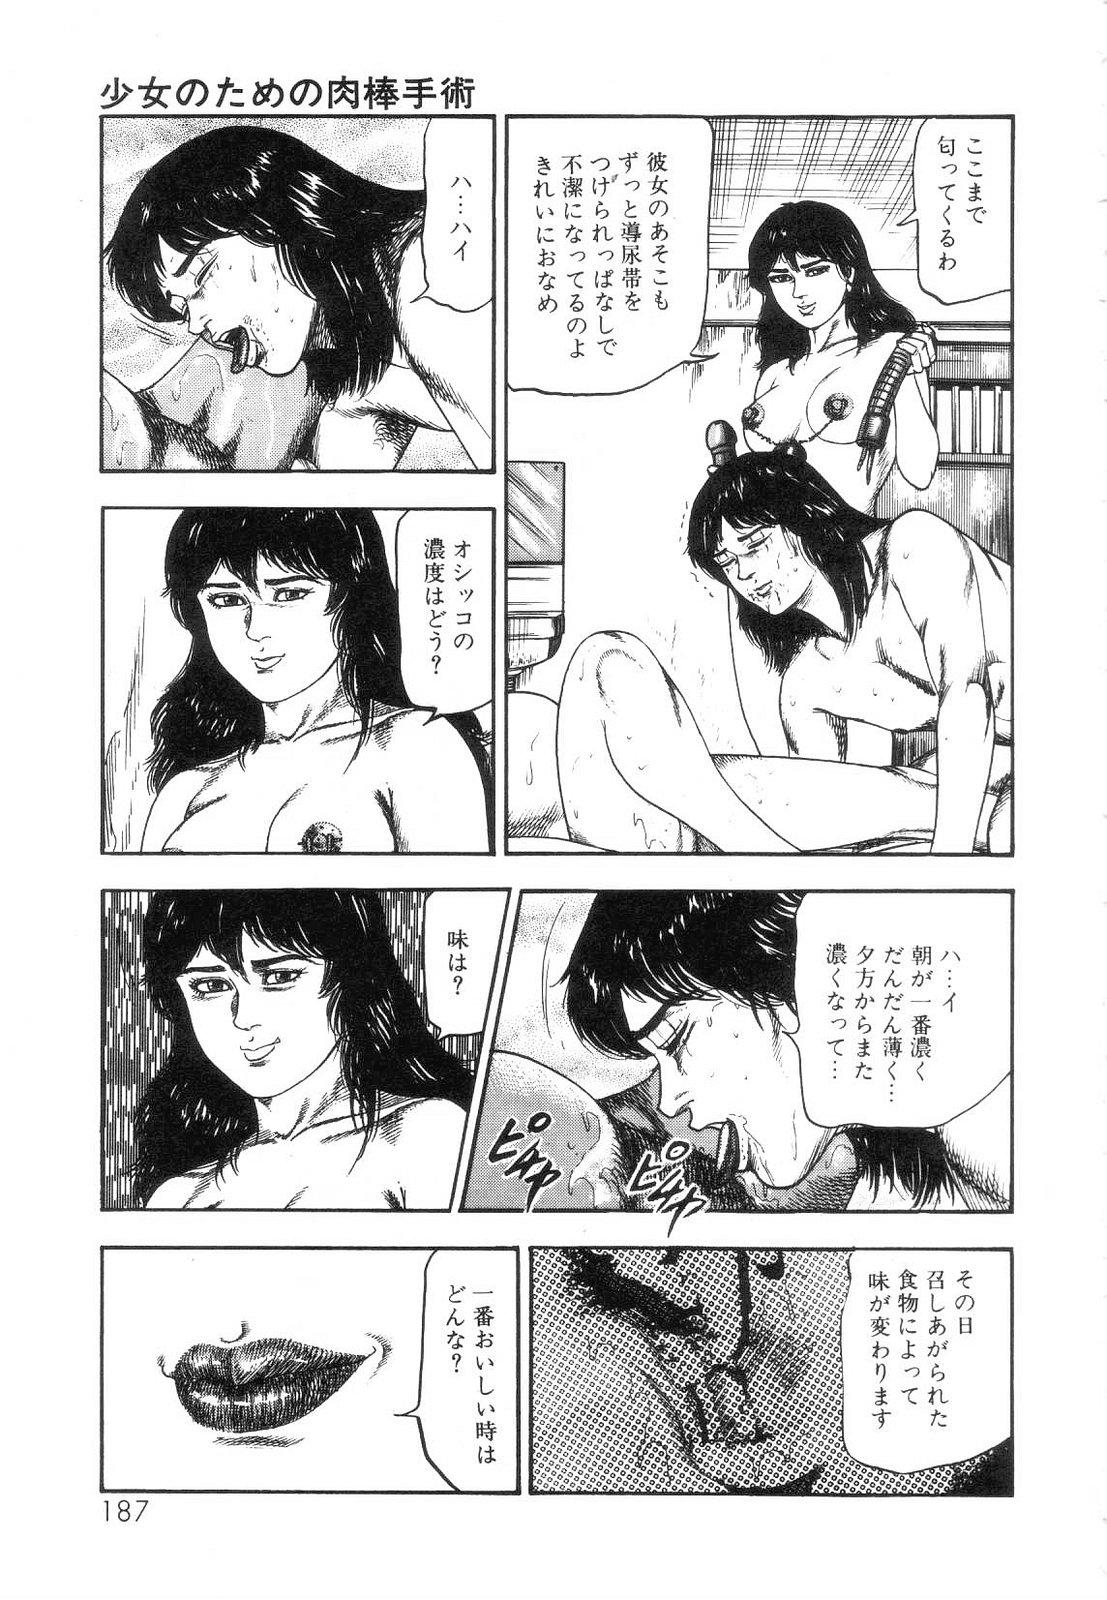 Shiro no Mokushiroku Vol. 5 - Ninshoujo Erika no Shou 188